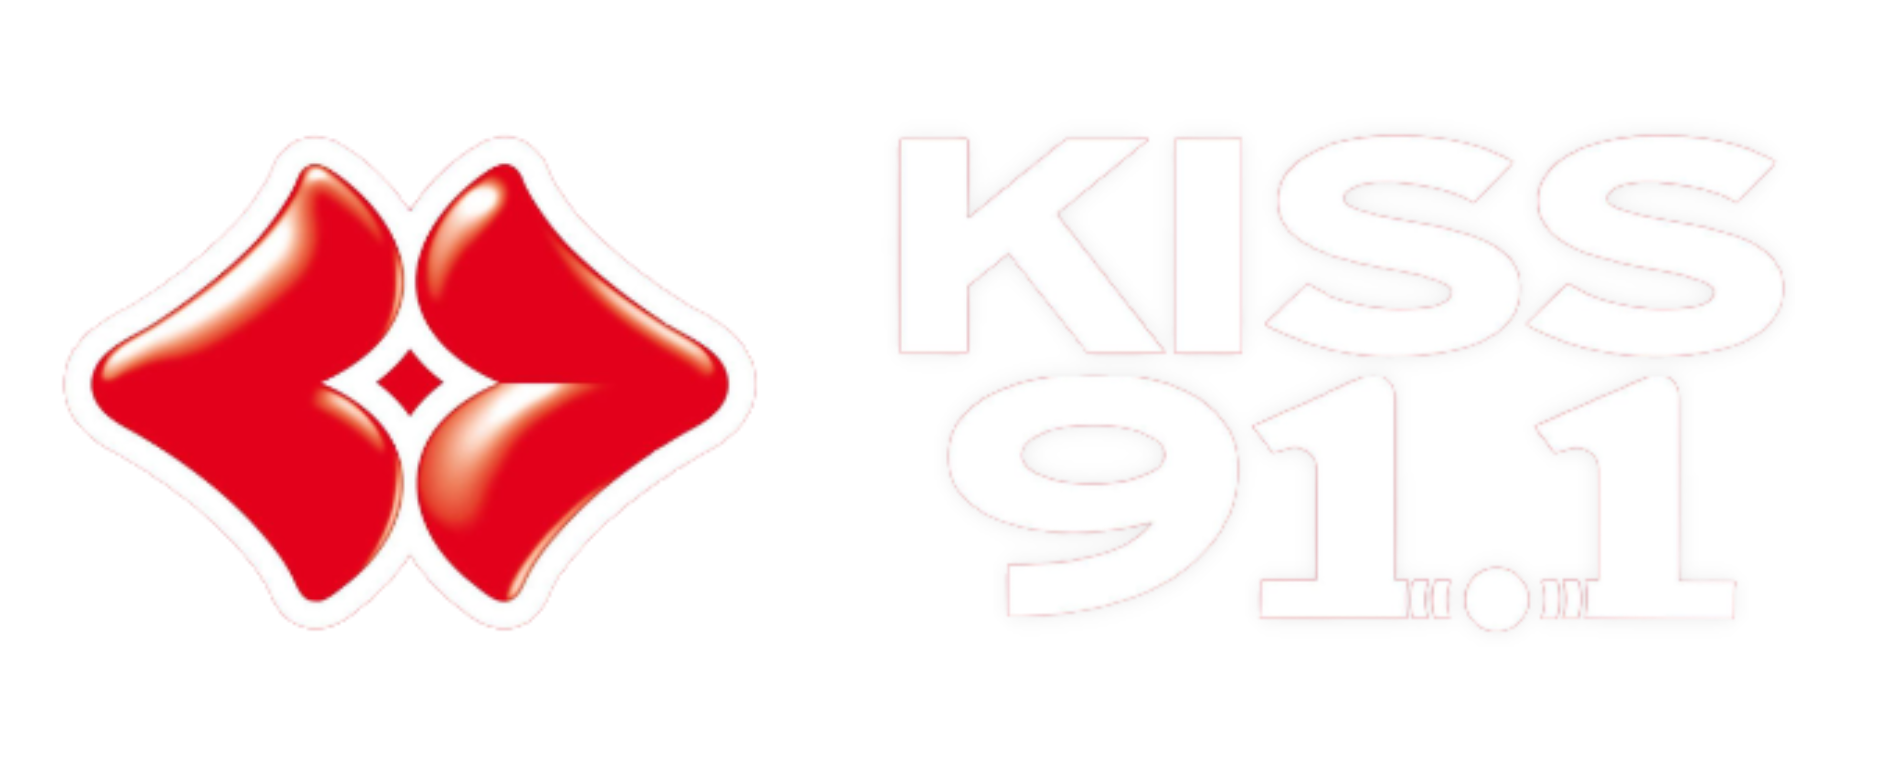 Kiss FM 91.1 Ioannina